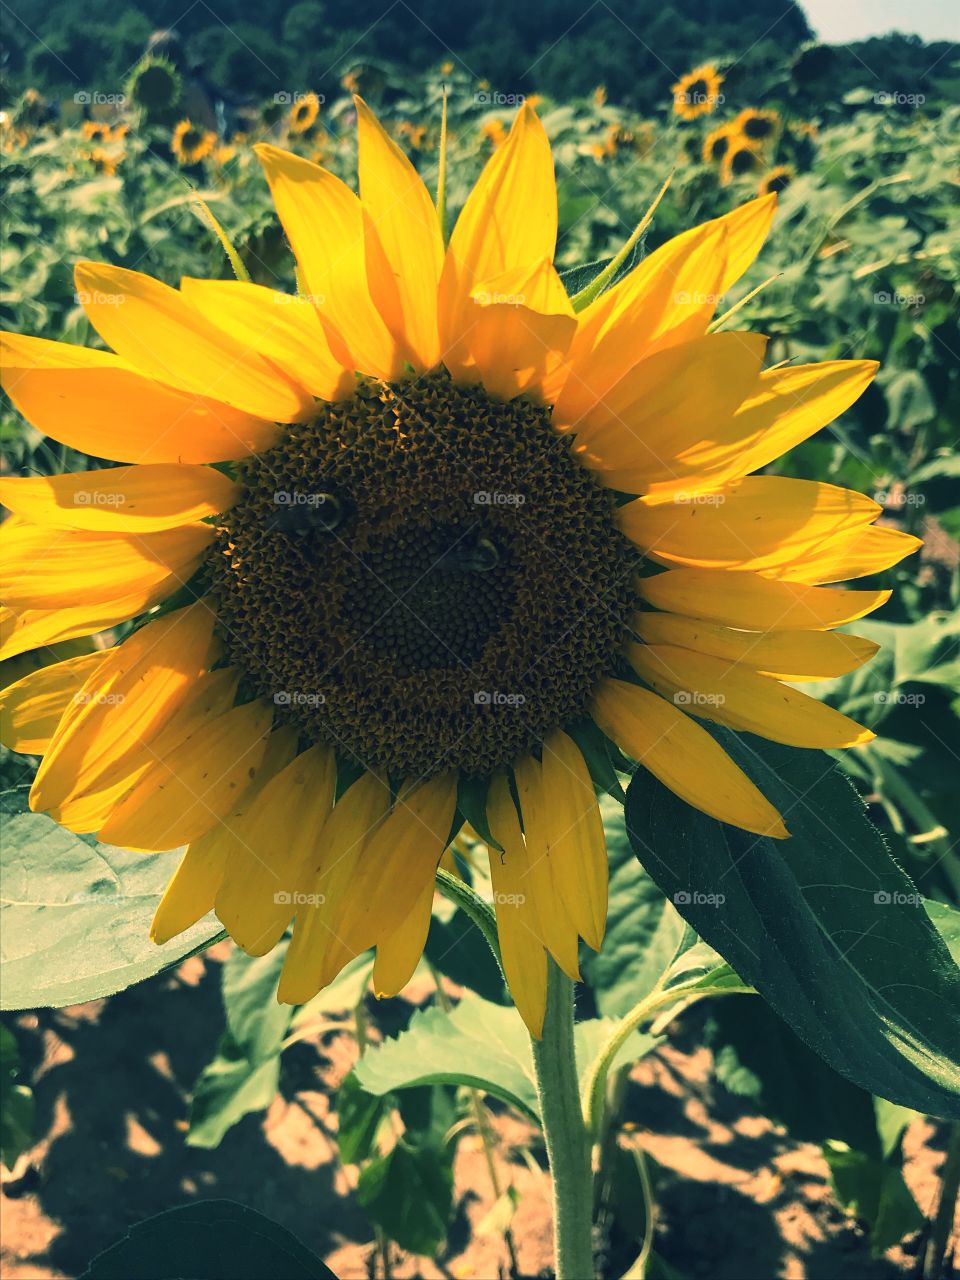 Sunny Sunflower, Dorothea Dix Park-Raleigh, NC🐝